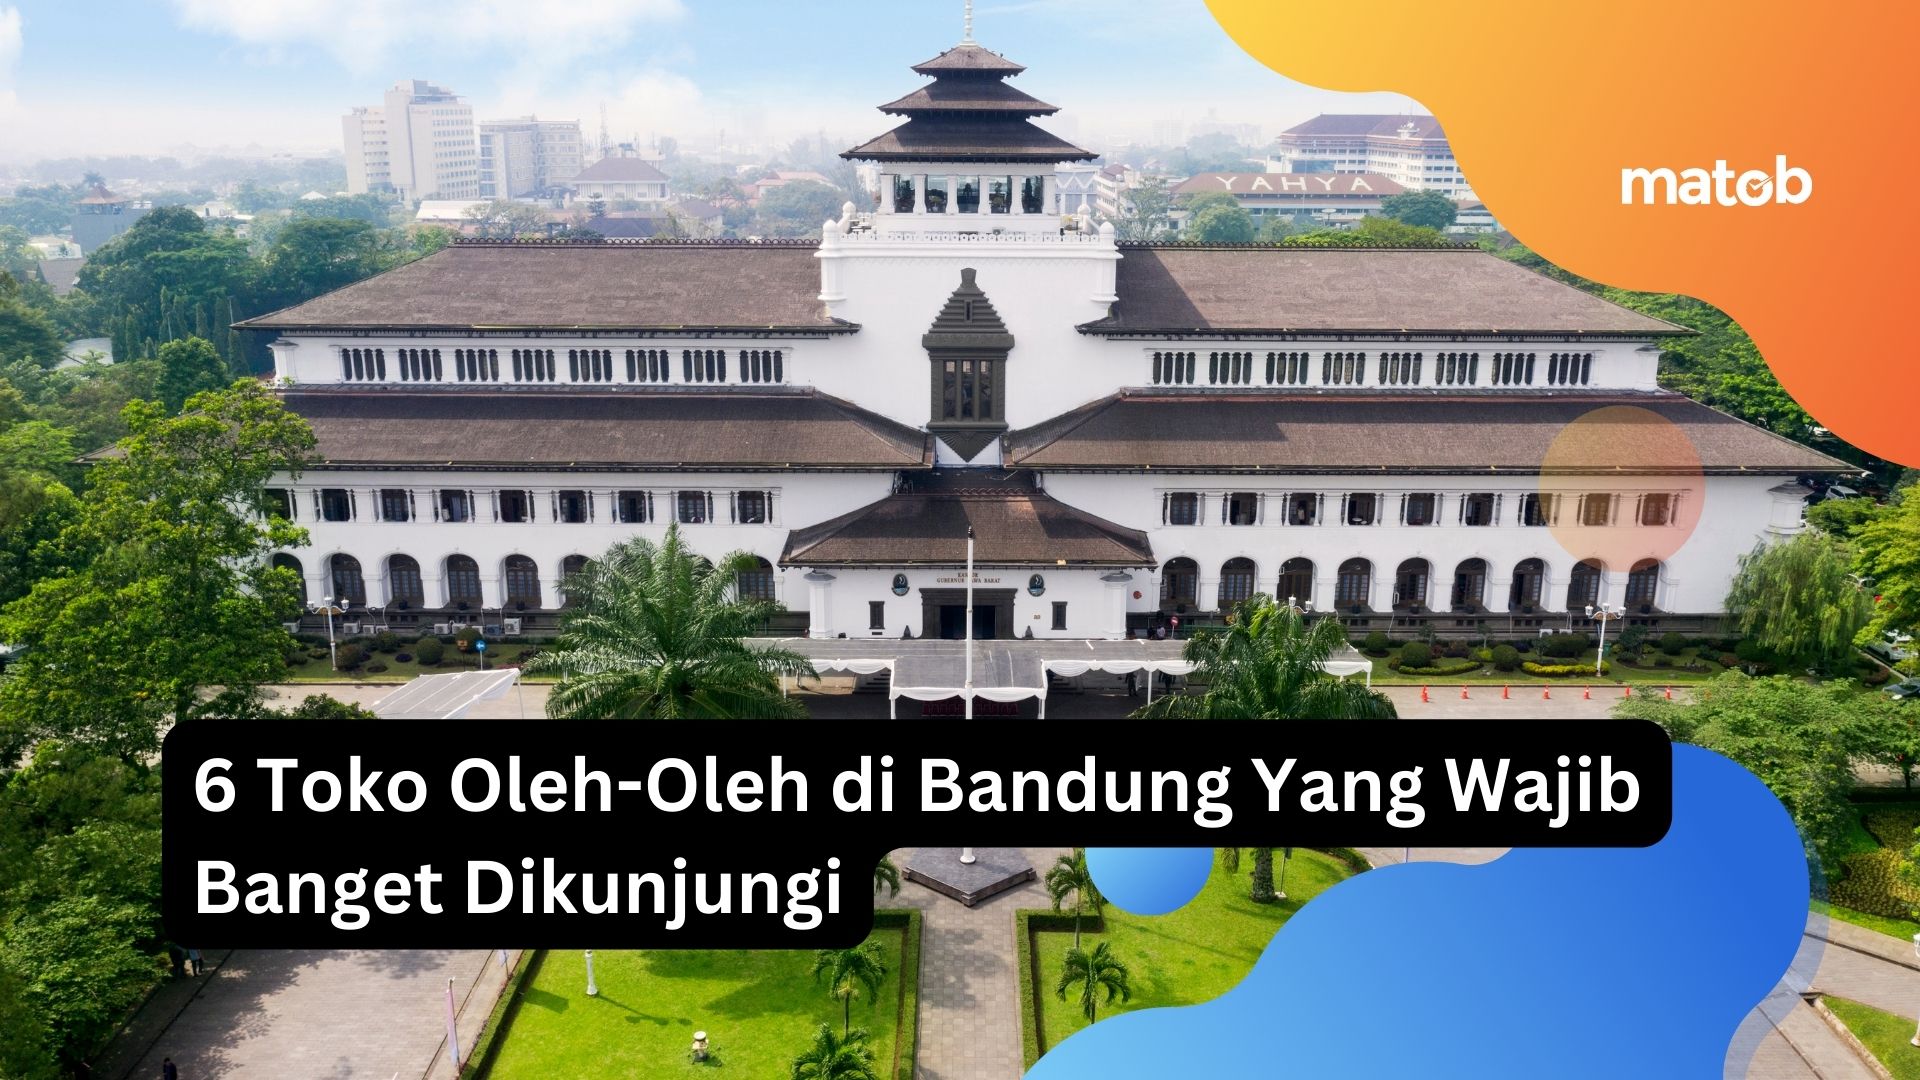 6 Toko Oleh-Oleh di Bandung Yang Wajib Banget Dikunjungi